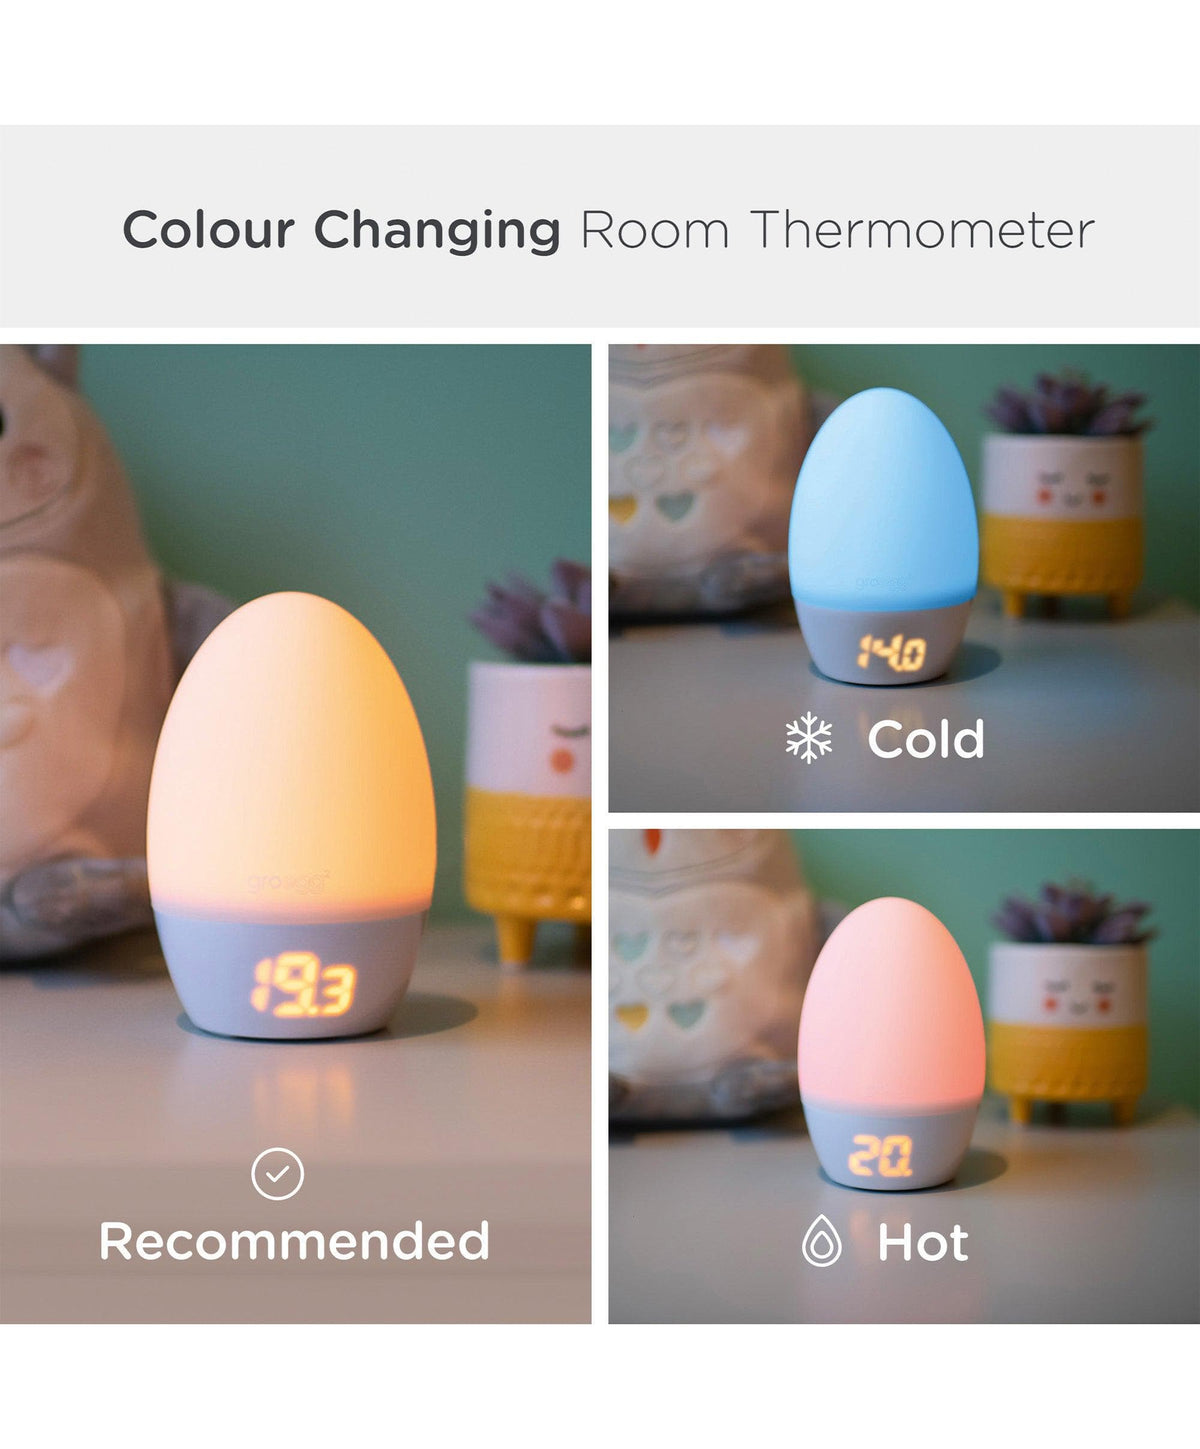 Room Thermometer - Gro egg 2, Safe Sleep